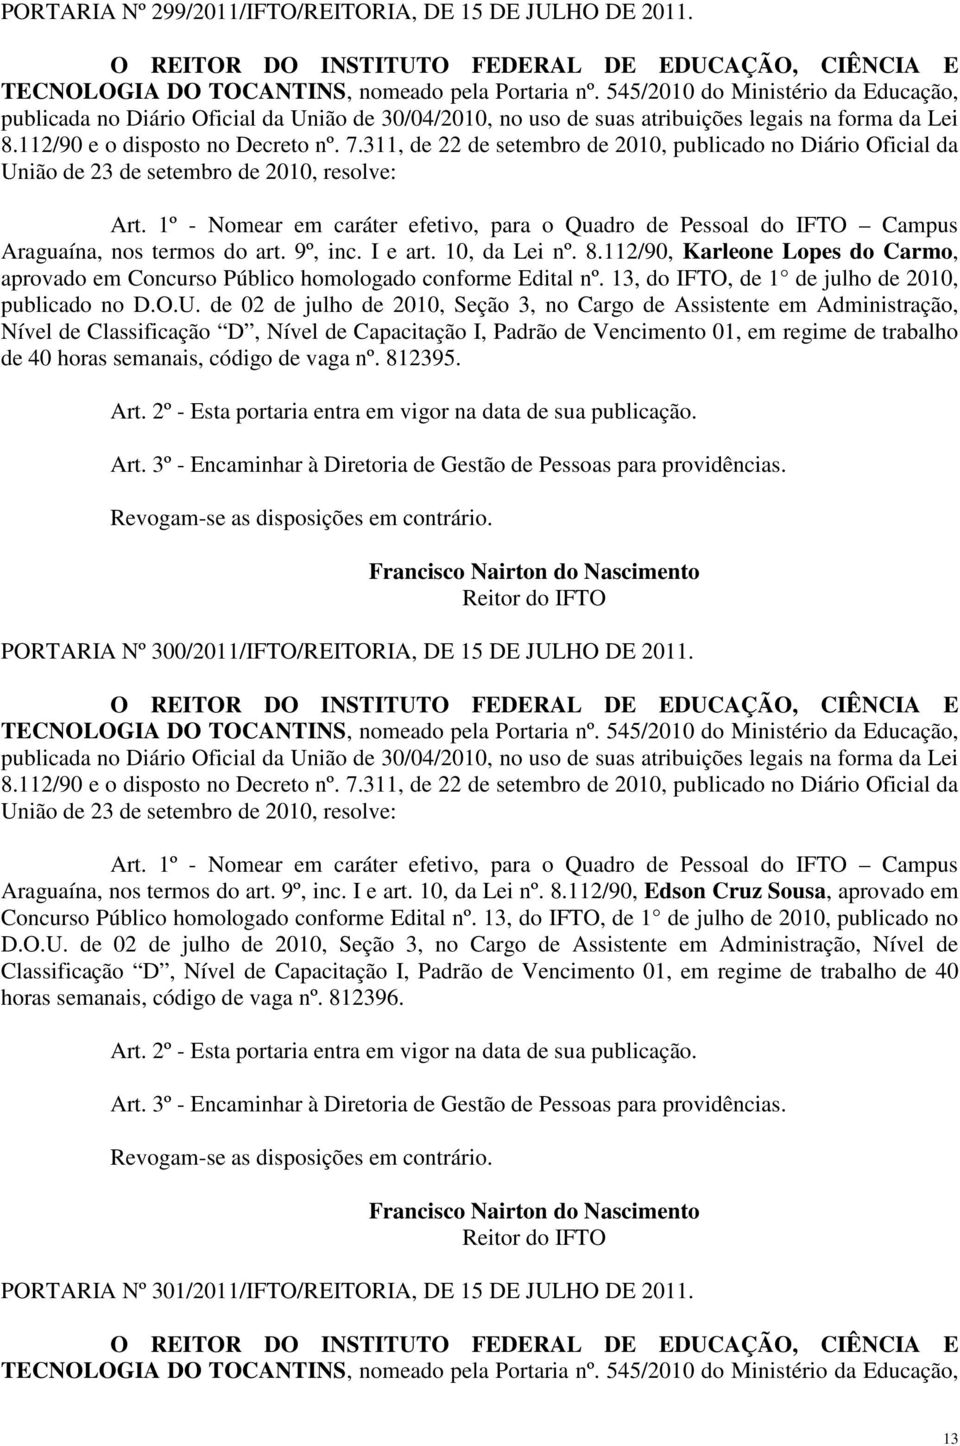 1º - Nomear em caráter efetivo, para o Quadro de Pessoal do IFTO Campus Araguaína, nos termos do art. 9º, inc. I e art. 10, da Lei nº. 8.